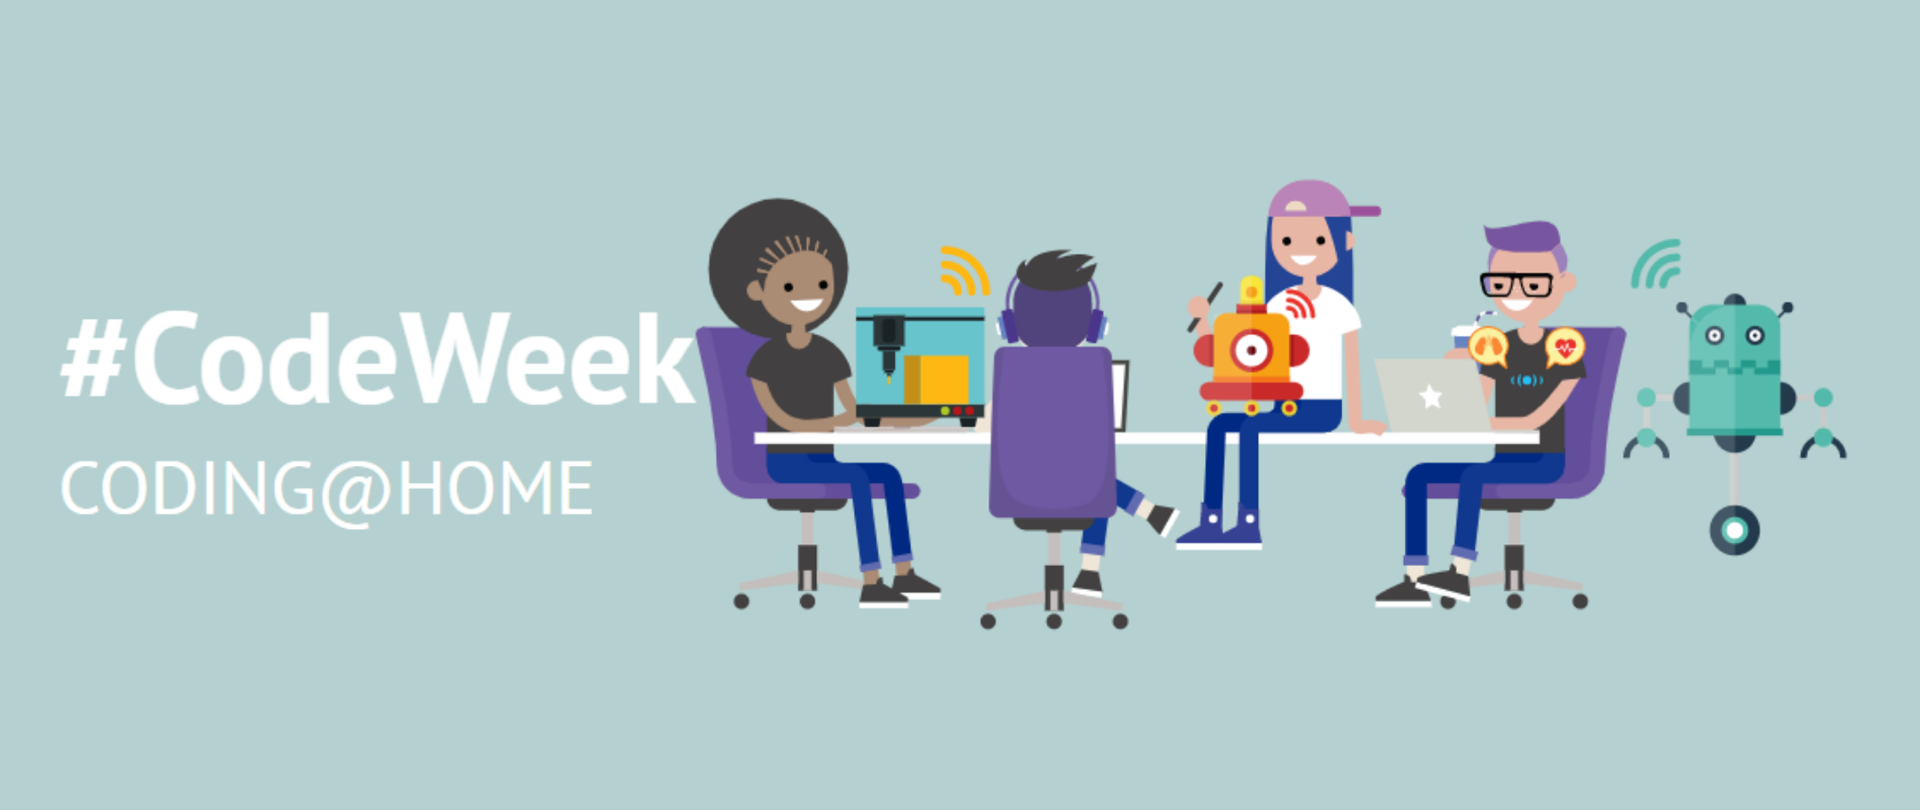 Dzieci przy dużym biurku programują roboty . Na niebieskim tle, poza 4 młodych osób widać napis "#CodeWeek Coding@Home"